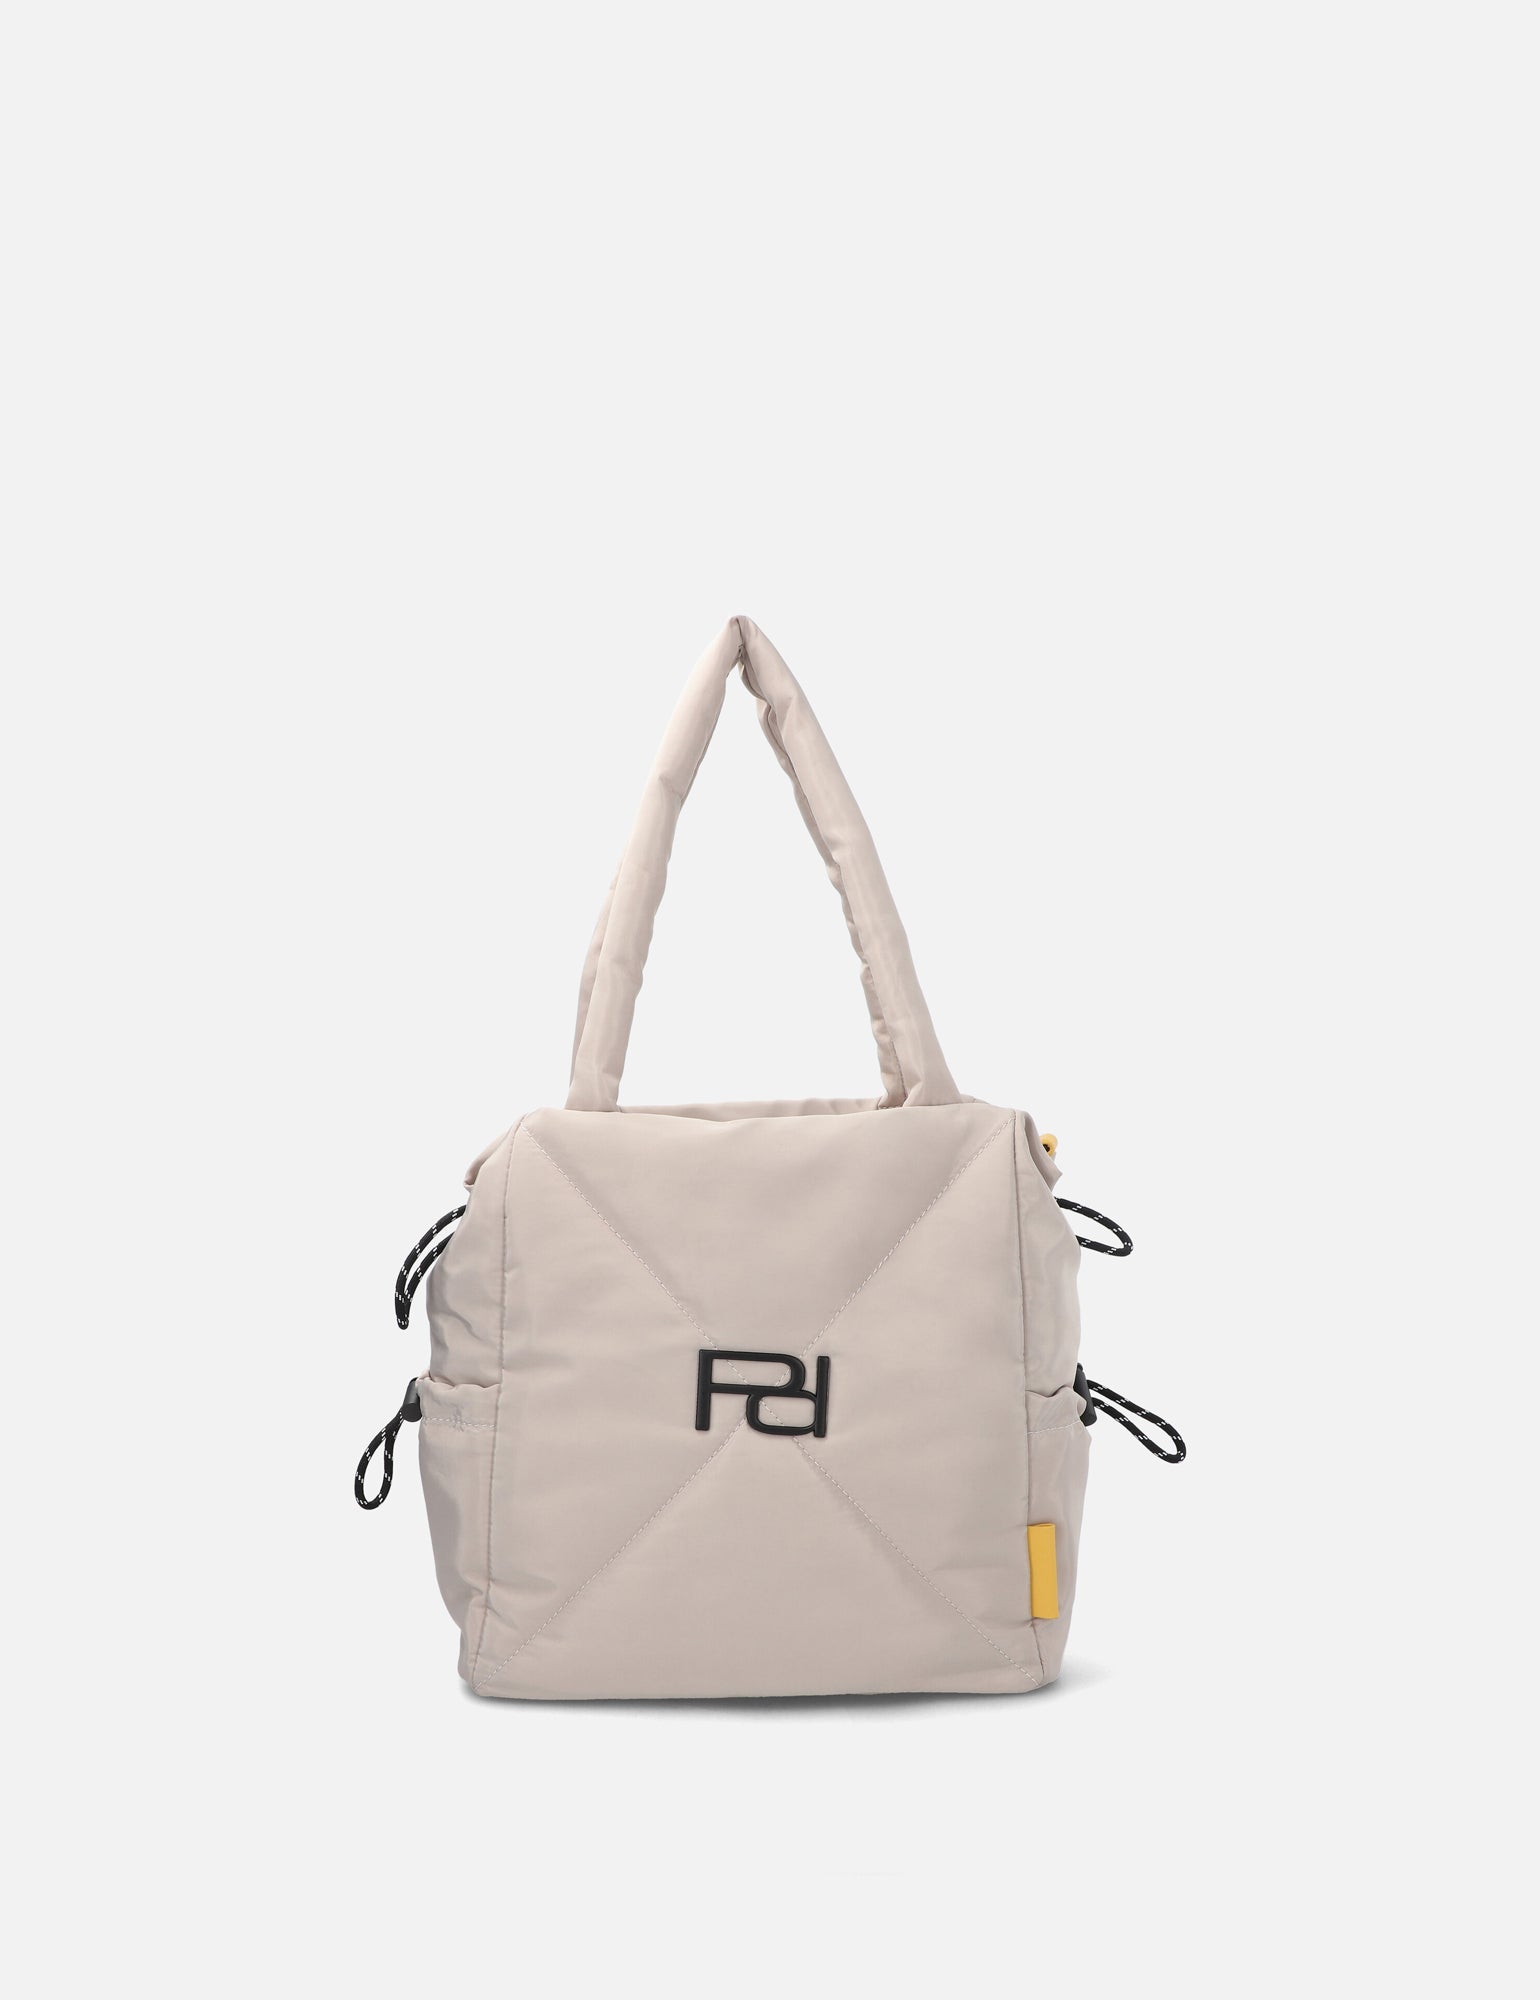 Shoping bag en nylon capitonado color beige